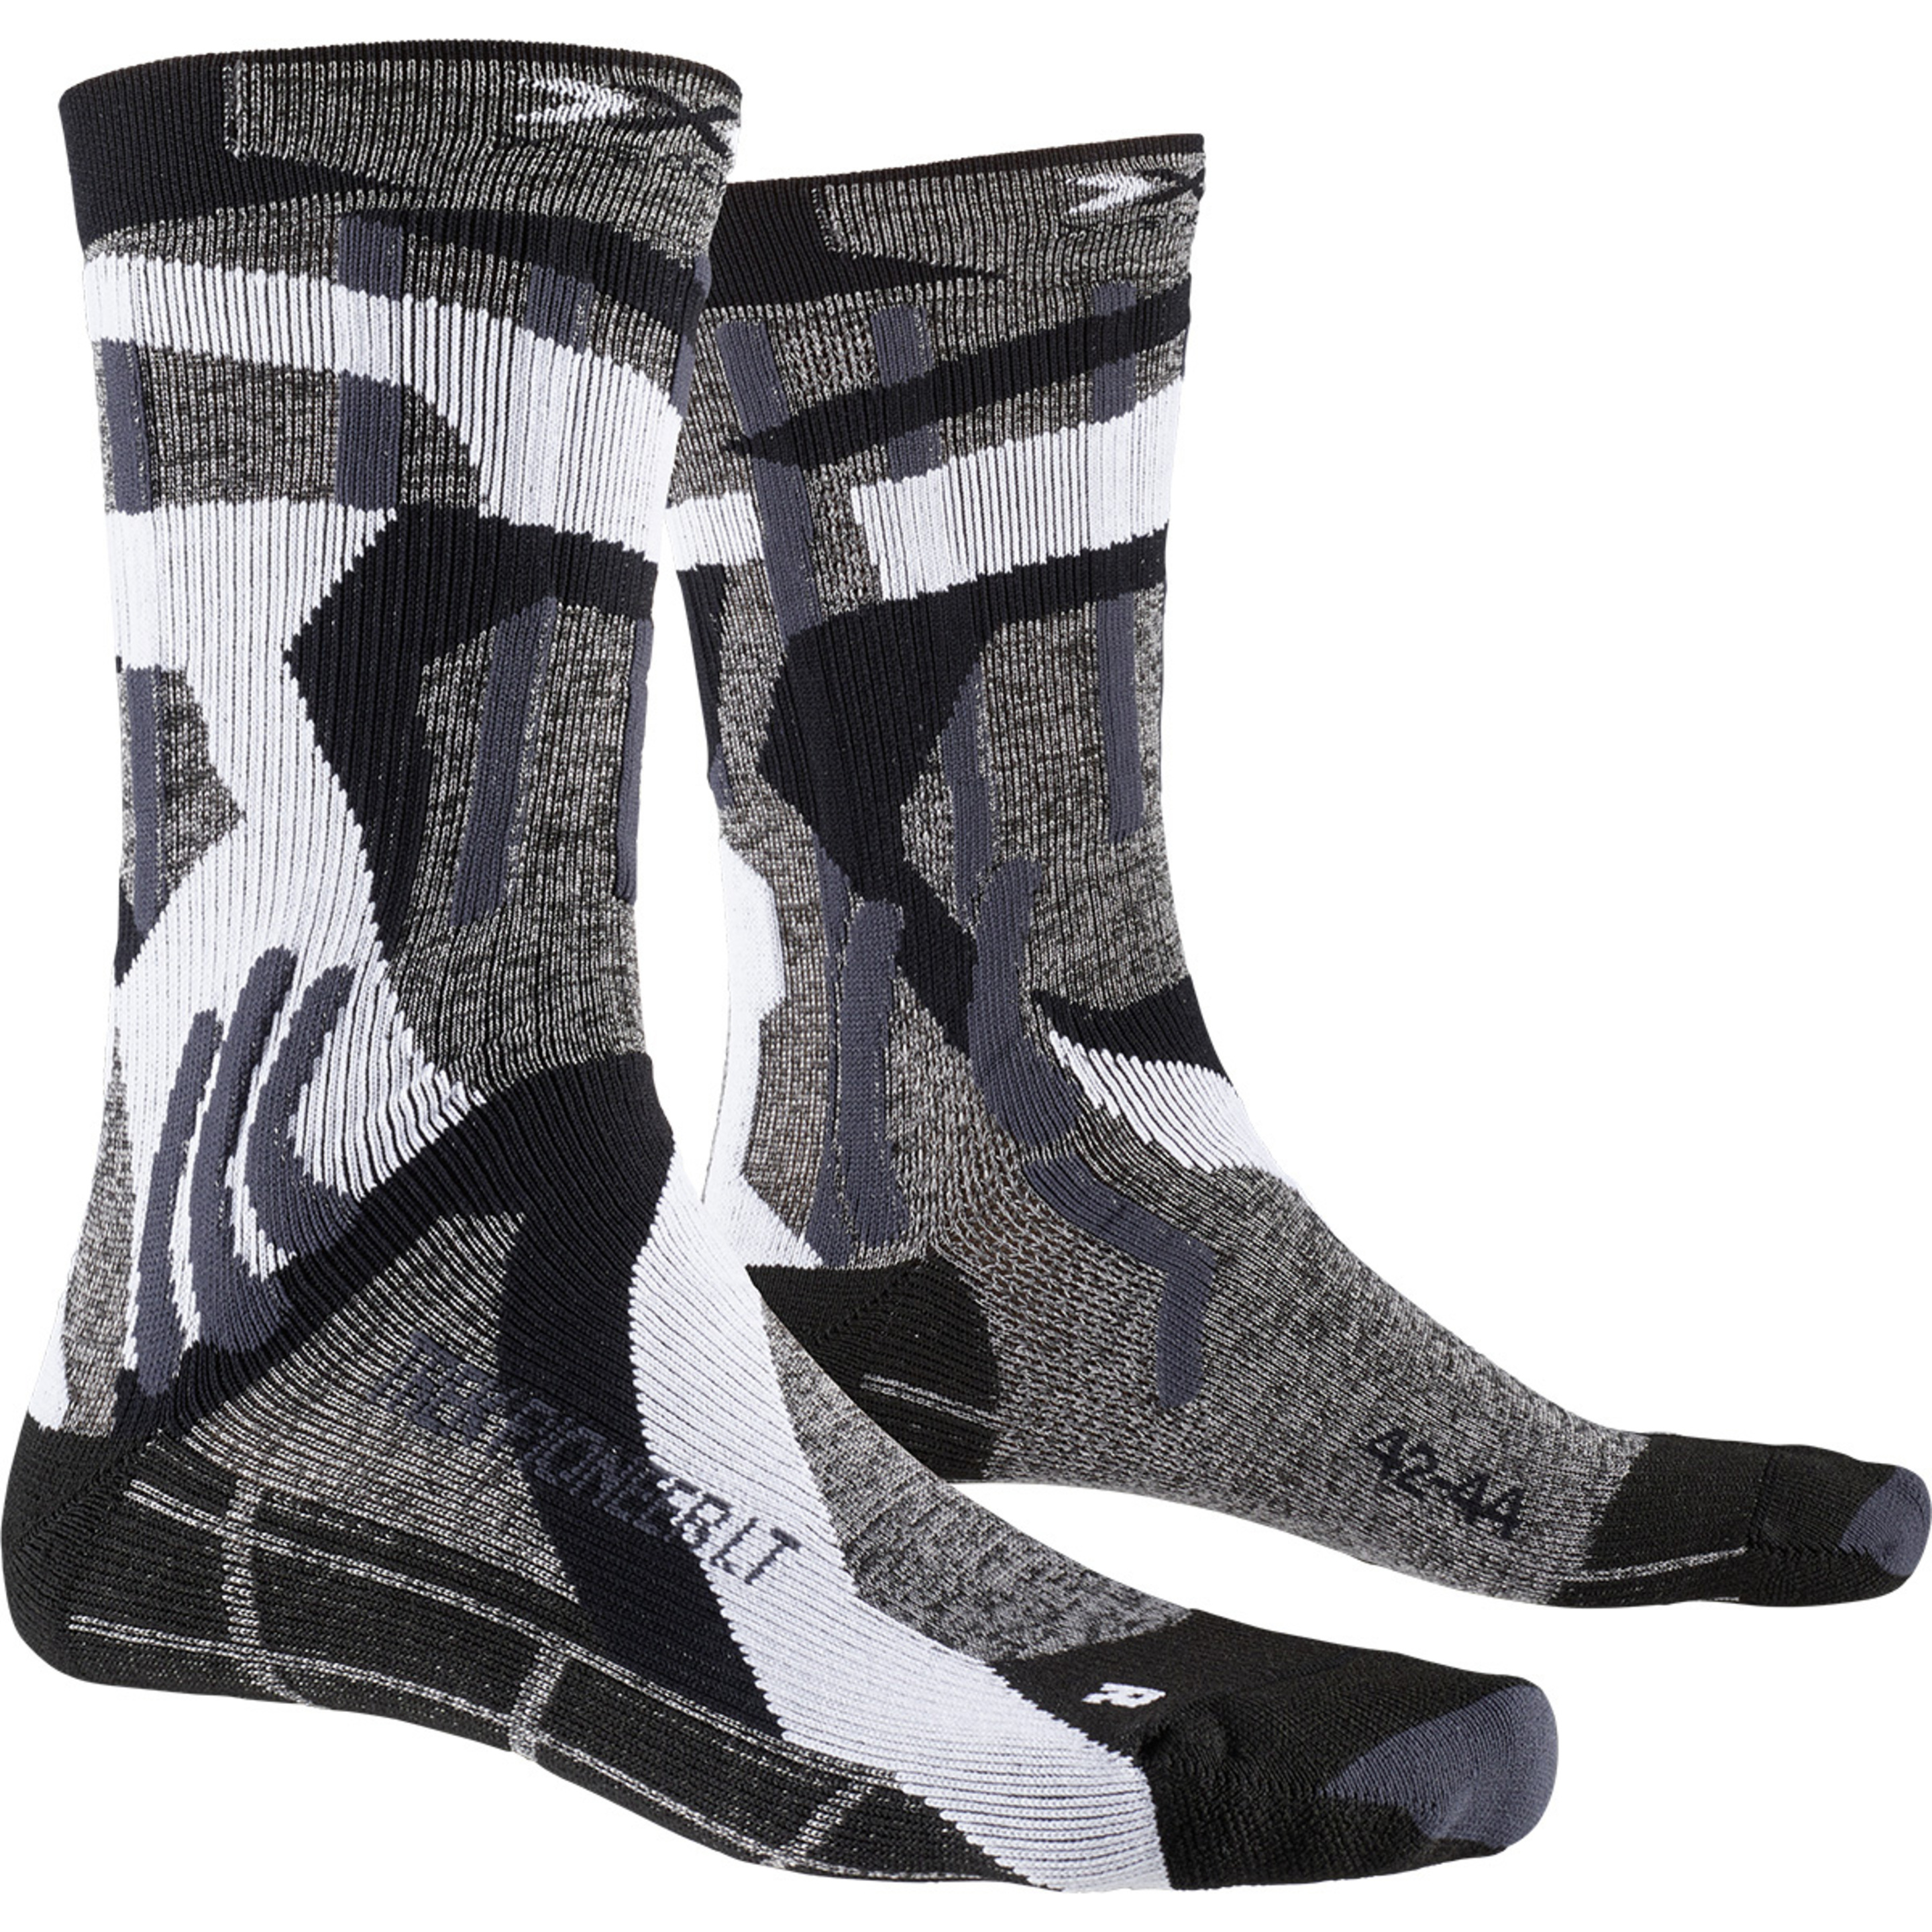 Calcetin Trek Pioneer Lt (multiplo 3 Uds) X-socks